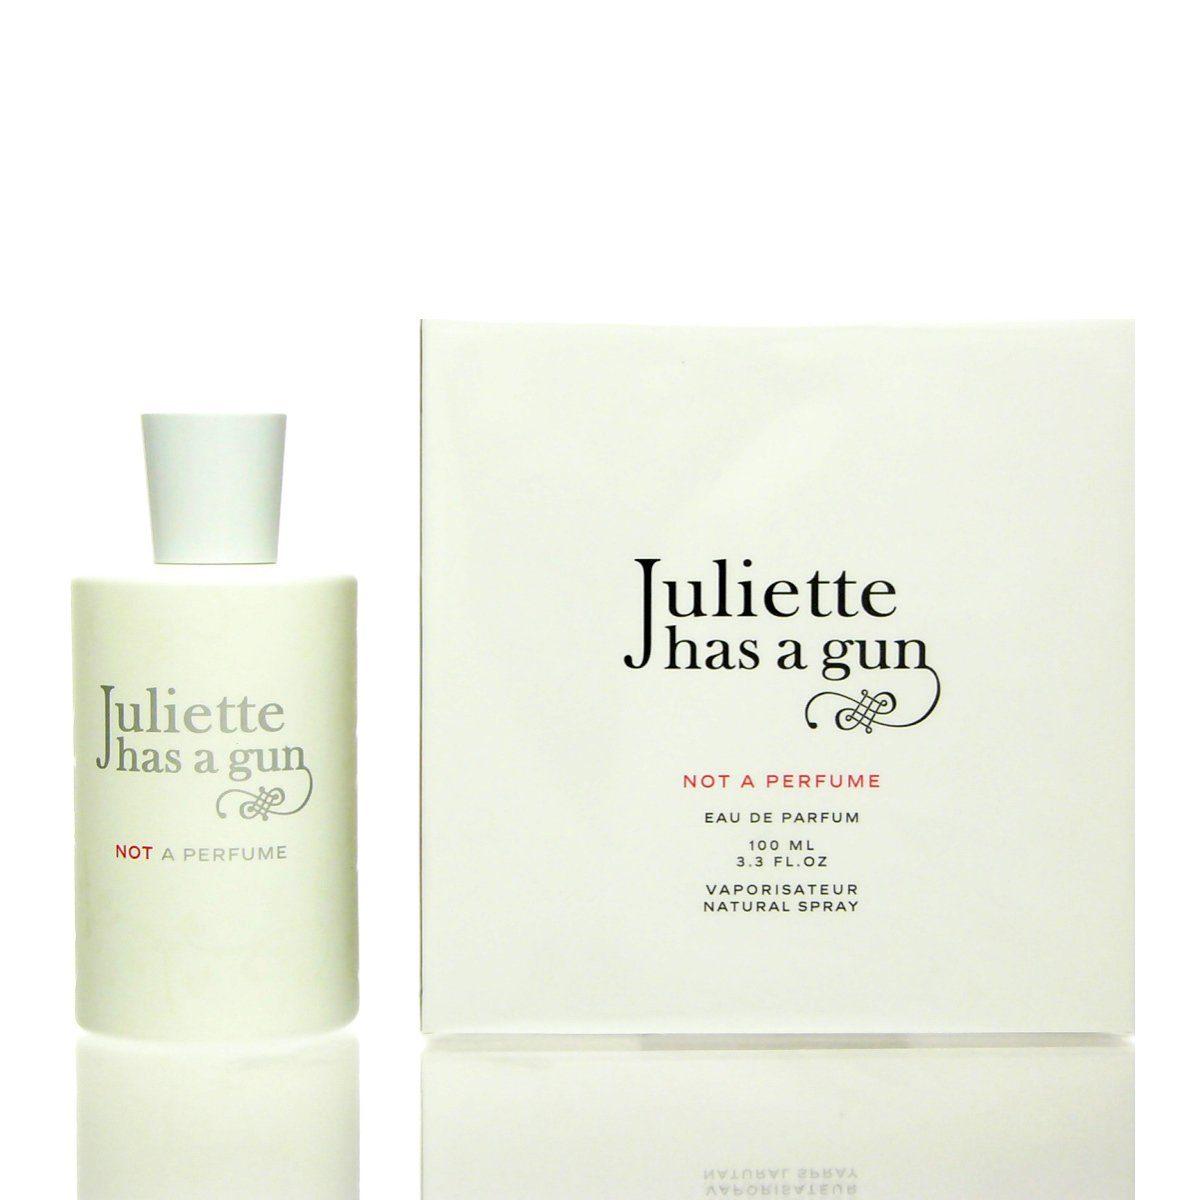 Juliette has Perfume Gun Parfum de 50 Not Eau a a Gun Eau de Parfum Juliette a Has ml